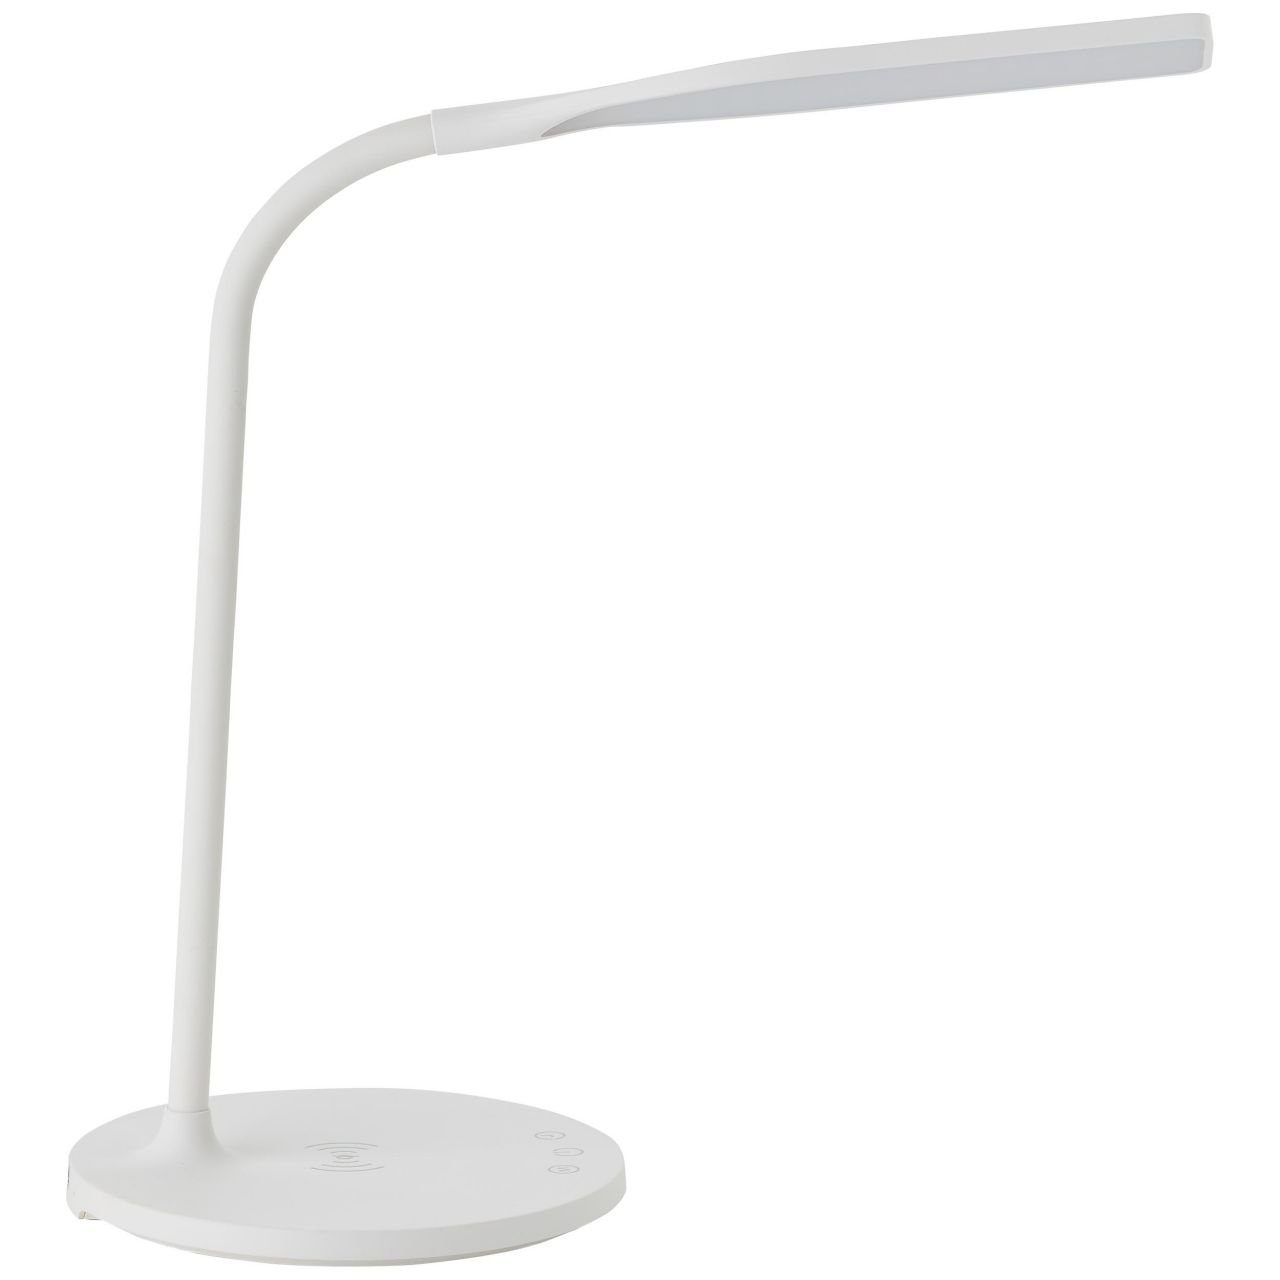 Tischleuchte LED Joni, Brilliant weiß, 3000-5400K, Tischleuchte int mit Joni Lampe, LED 1x Induktionsladeschale